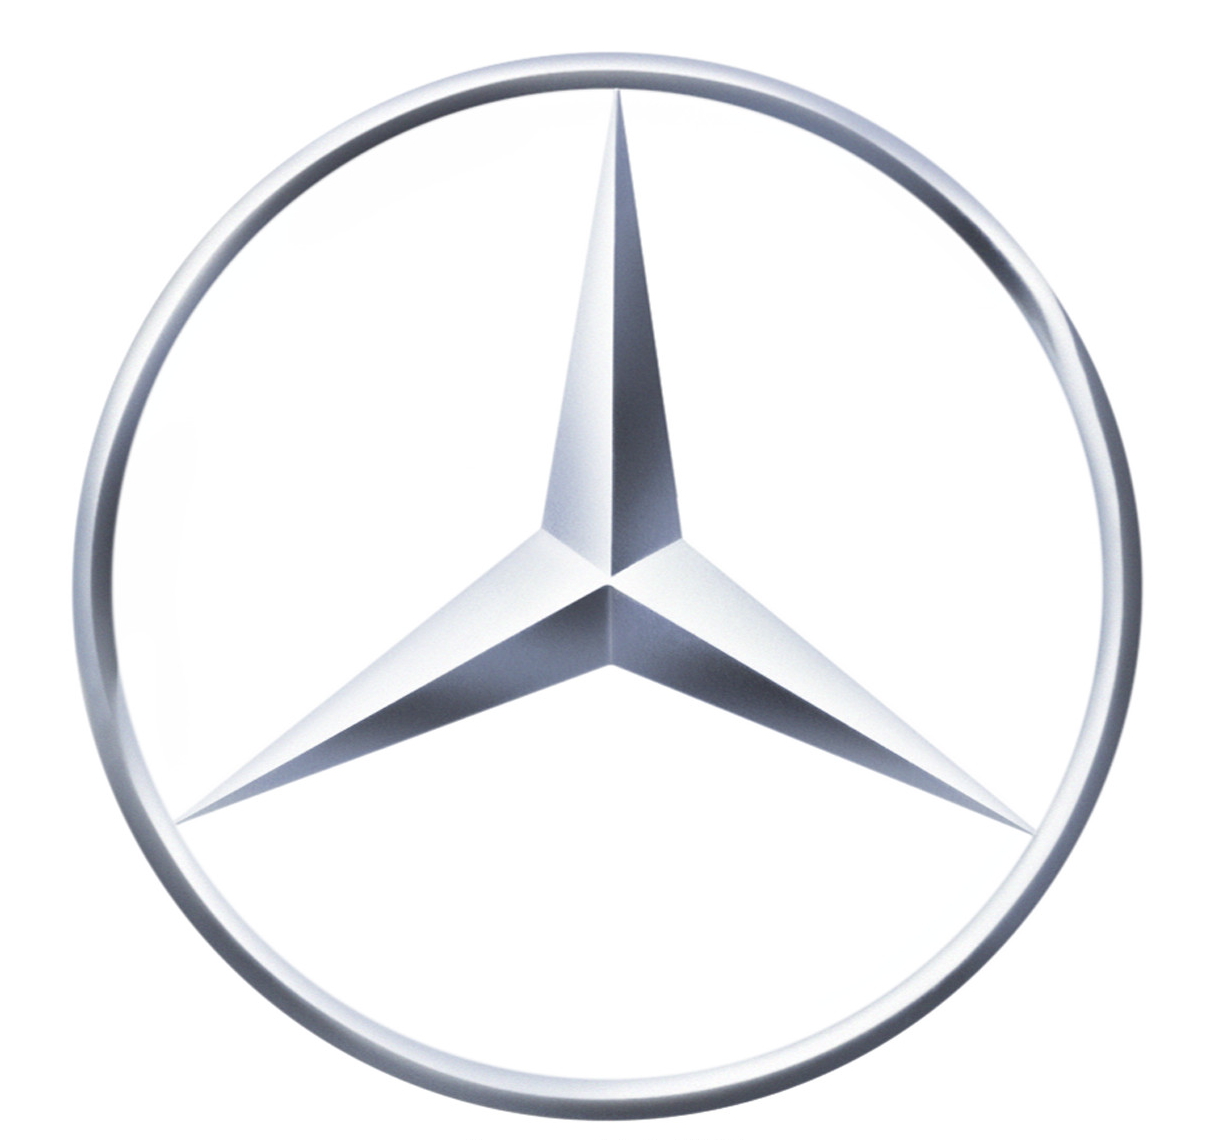 http://www.cbt.com.my/wp-content/uploads/2013/08/Mercedes.jpg